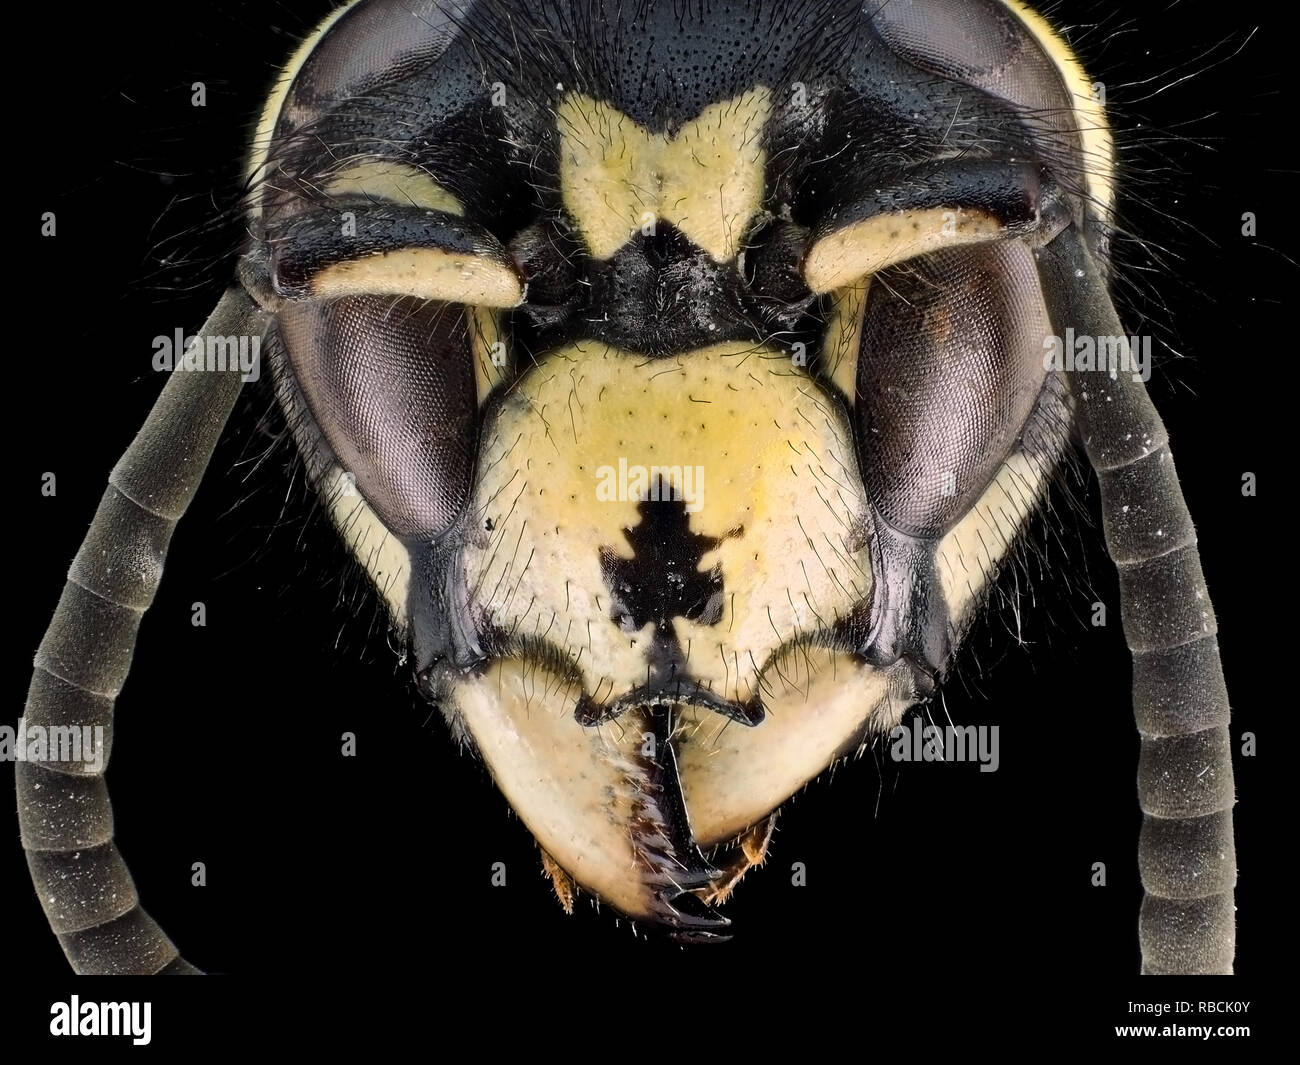 Extreme Makroaufnahme (Aufnahme) von einer Wespe (Vespula sp.) Kopf Stockfoto